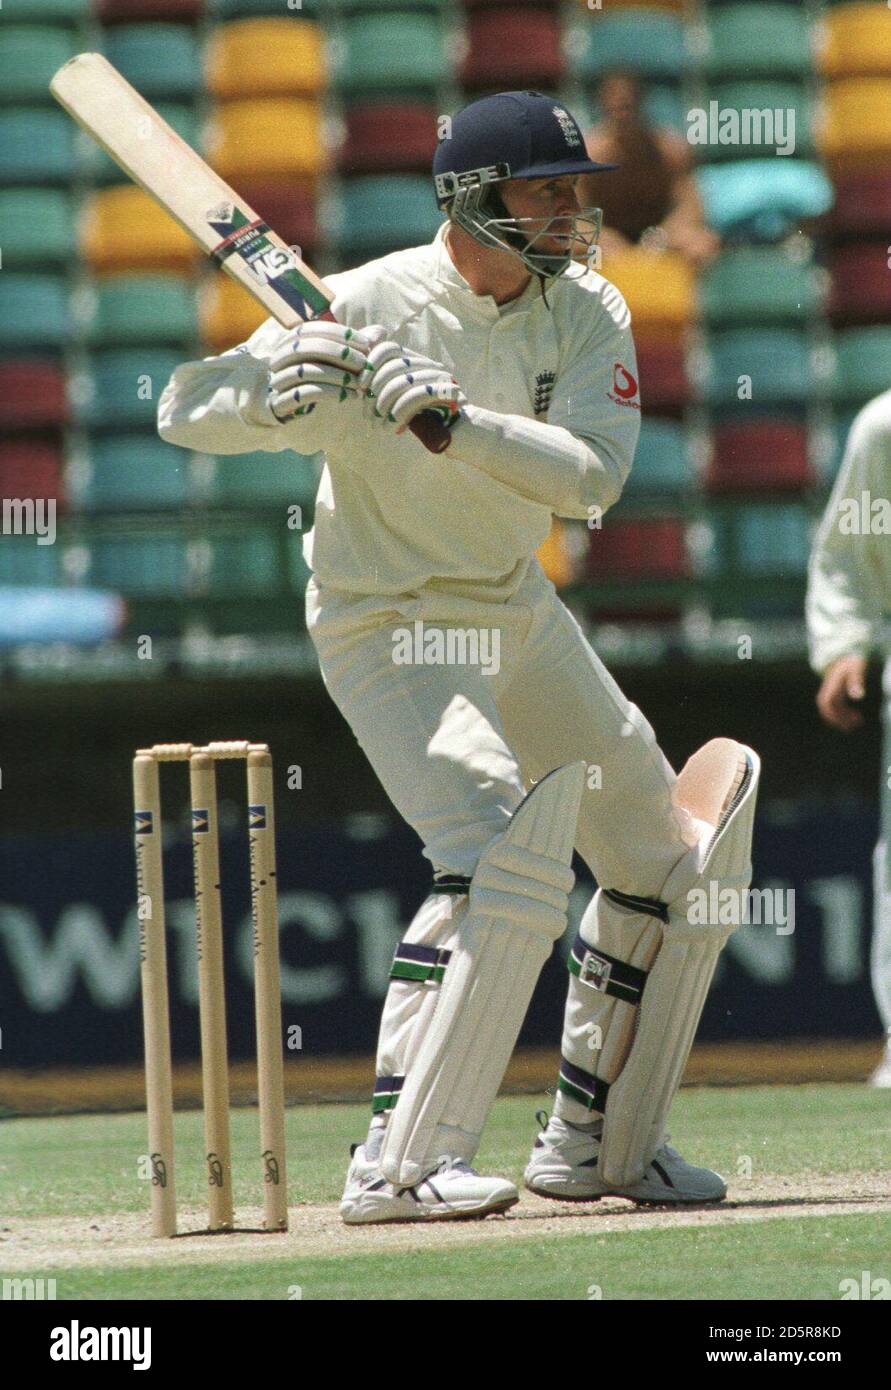 Dominic Cork d'Angleterre pendant son bref séjour au cricket Avant d'être licencié pour un canard par le Glen McGrath d'Australie Banque D'Images